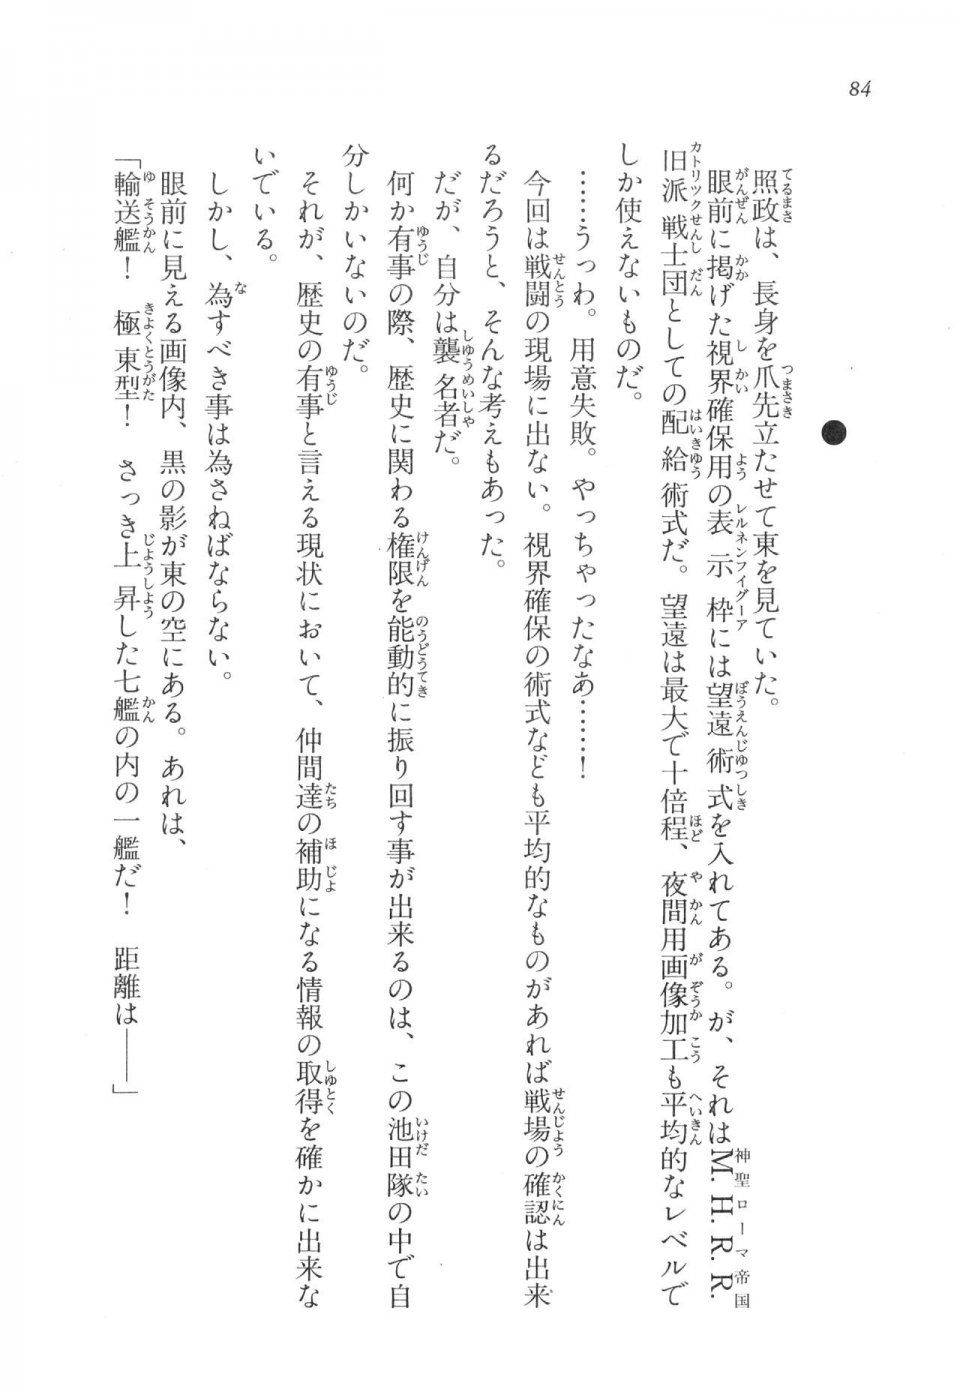 Kyoukai Senjou no Horizon LN Vol 17(7B) - Photo #84